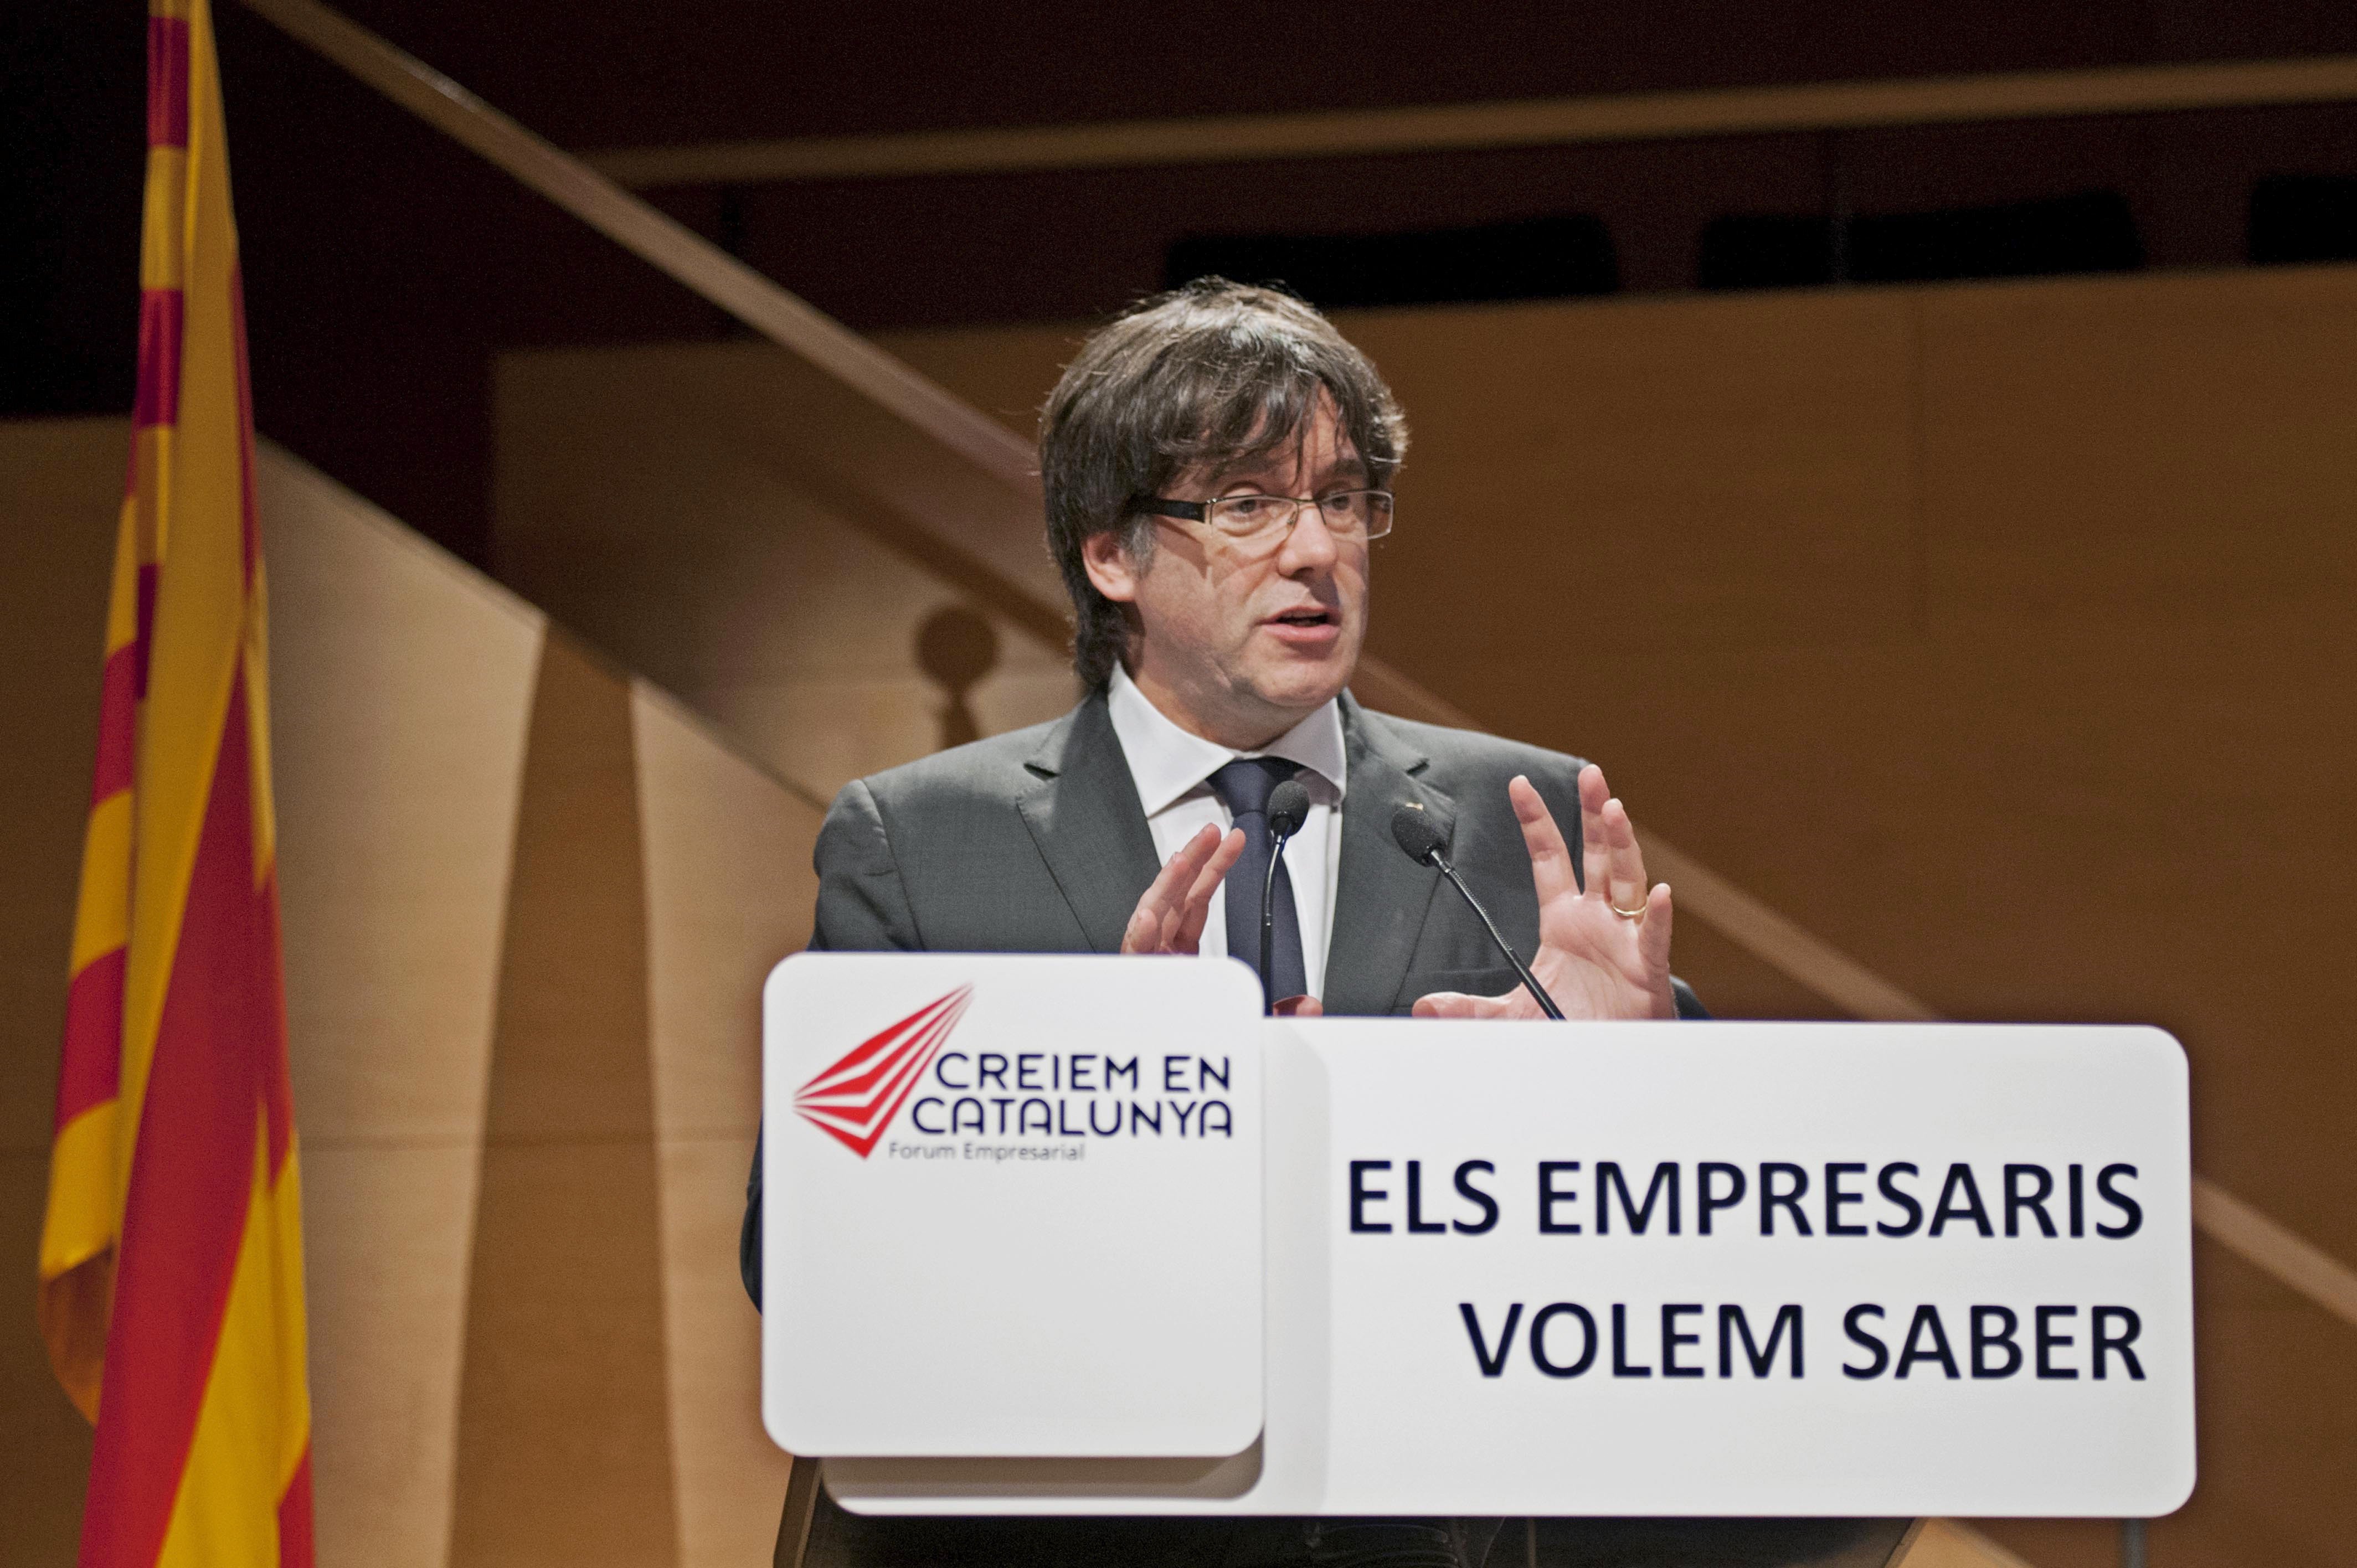 Puigdemont crida l'empresariat a trencar l'statu quo amb l'Estat